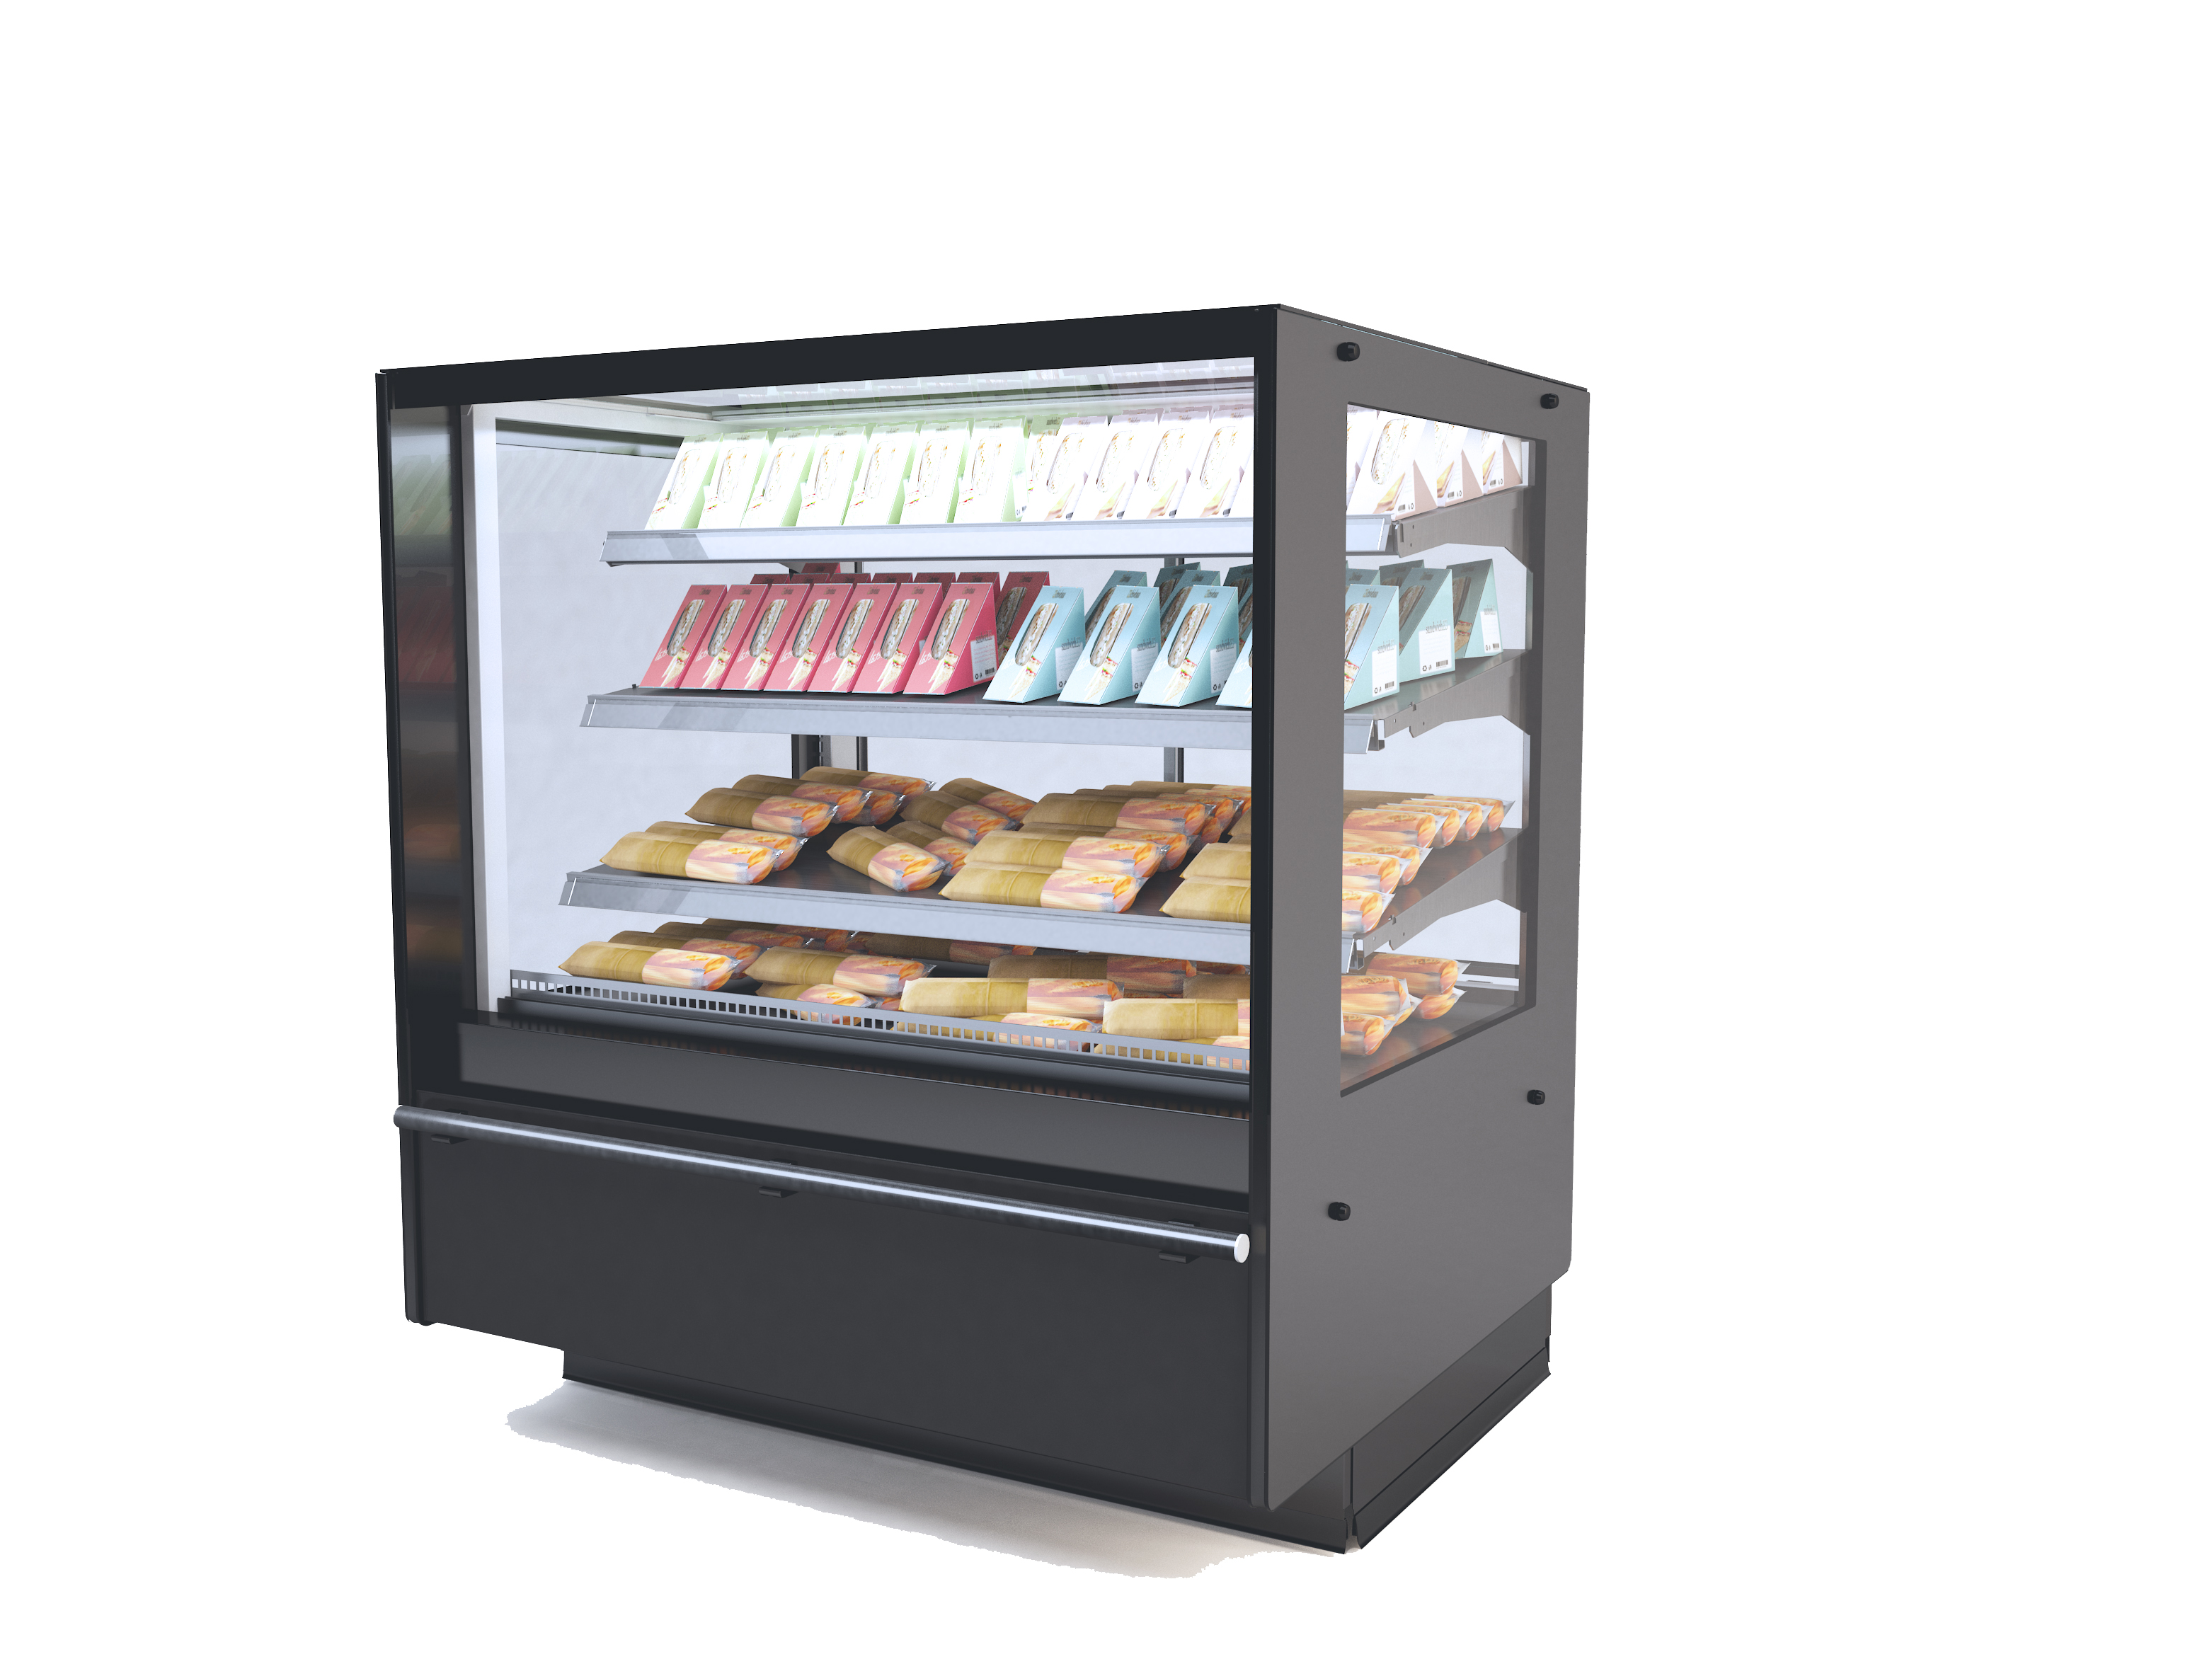 Frost-Trol estrena nuevos equipos de refrigeración comercial